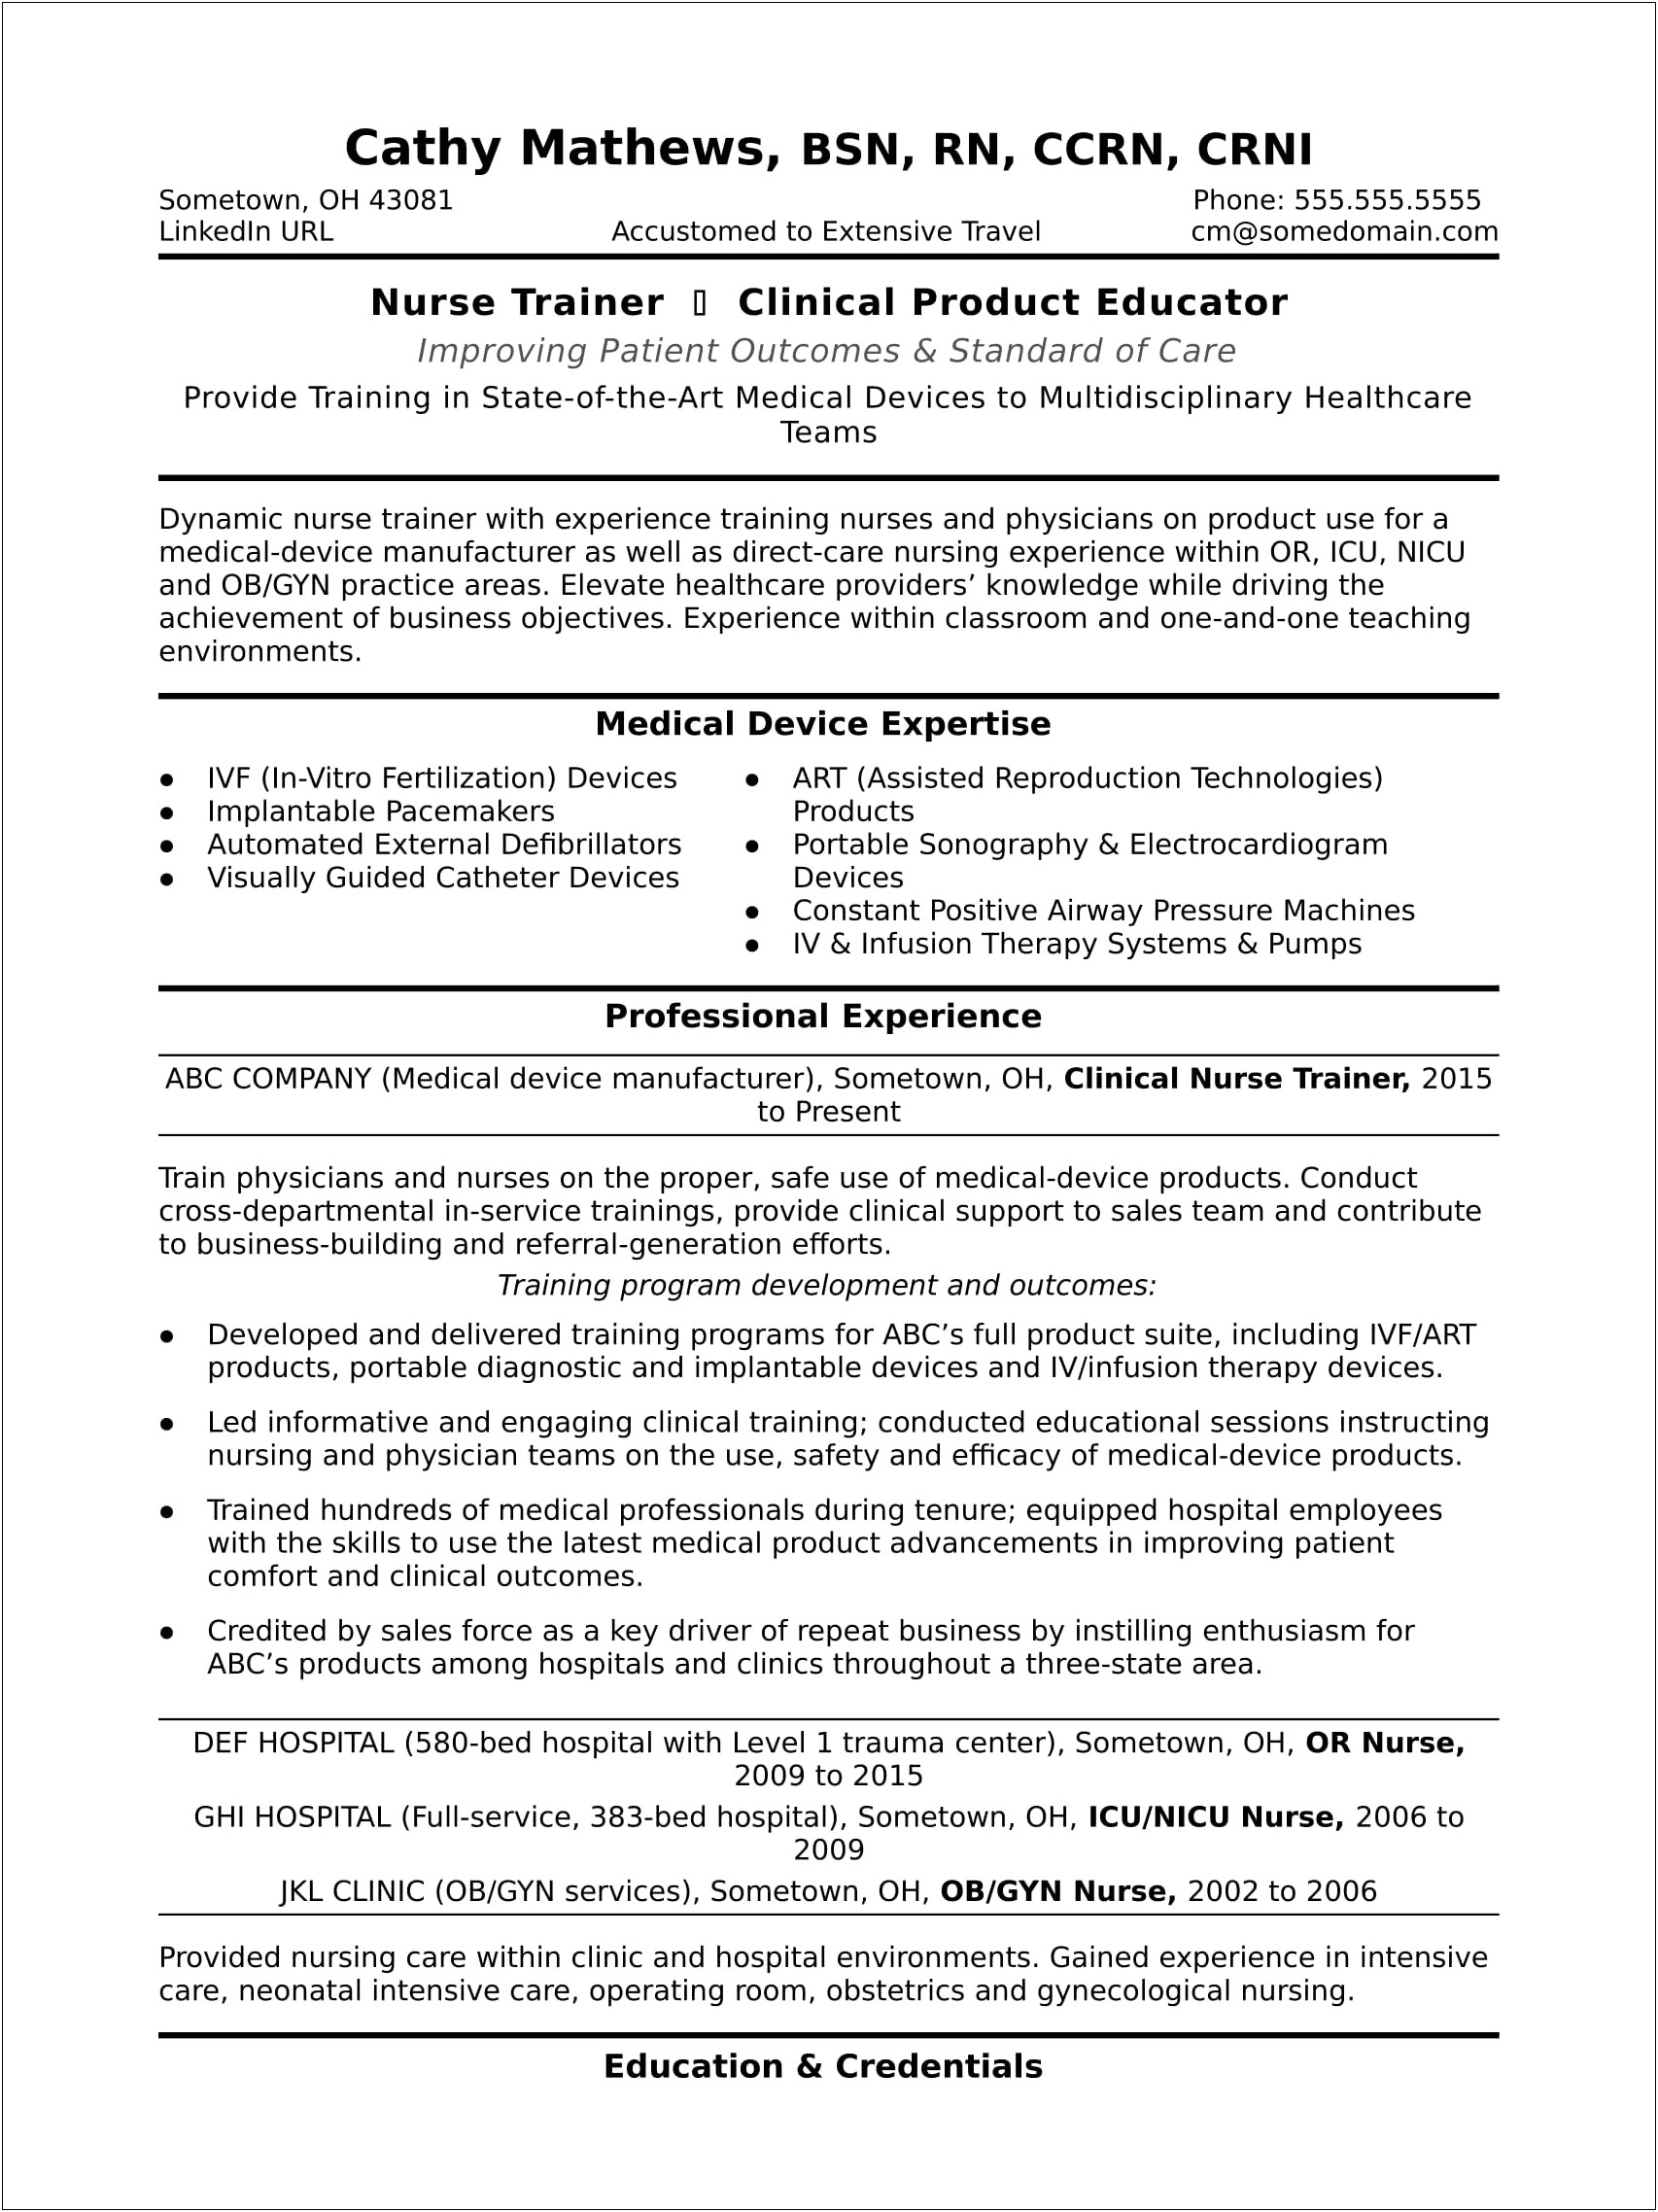 Level 3 Nicu Nurse Job Description Resume